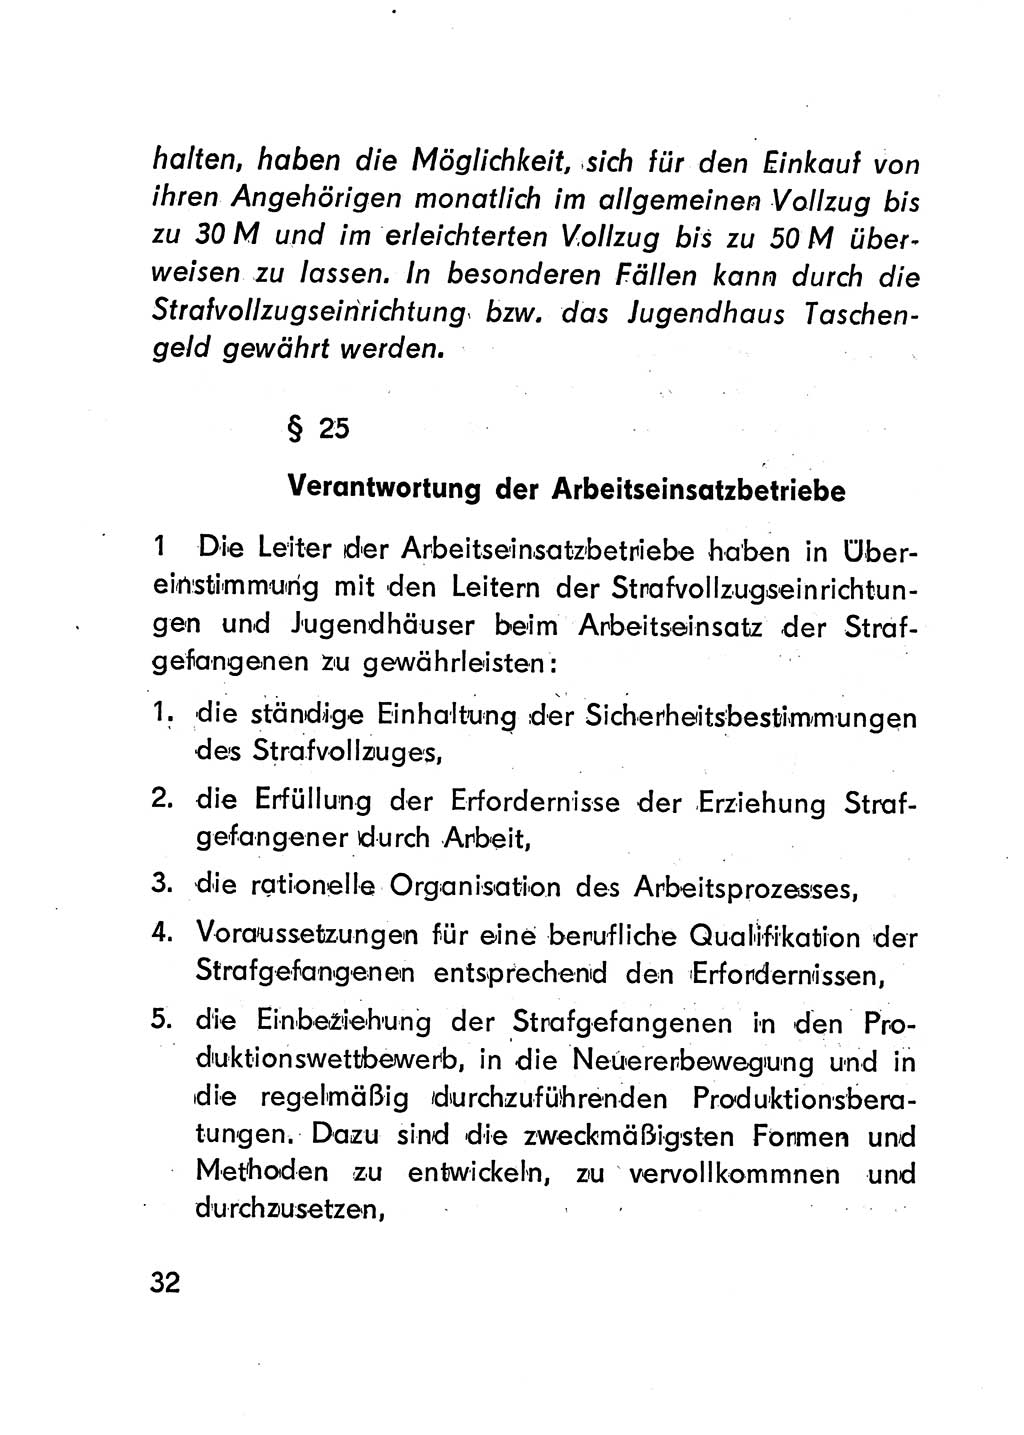 Gesetz über den Vollzug der Strafen mit Freiheitsentzug (Strafvollzugsgesetz) - StVG - [Deutsche Demokratische Republik (DDR)] 1977, Seite 32 (StVG DDR 1977, S. 32)